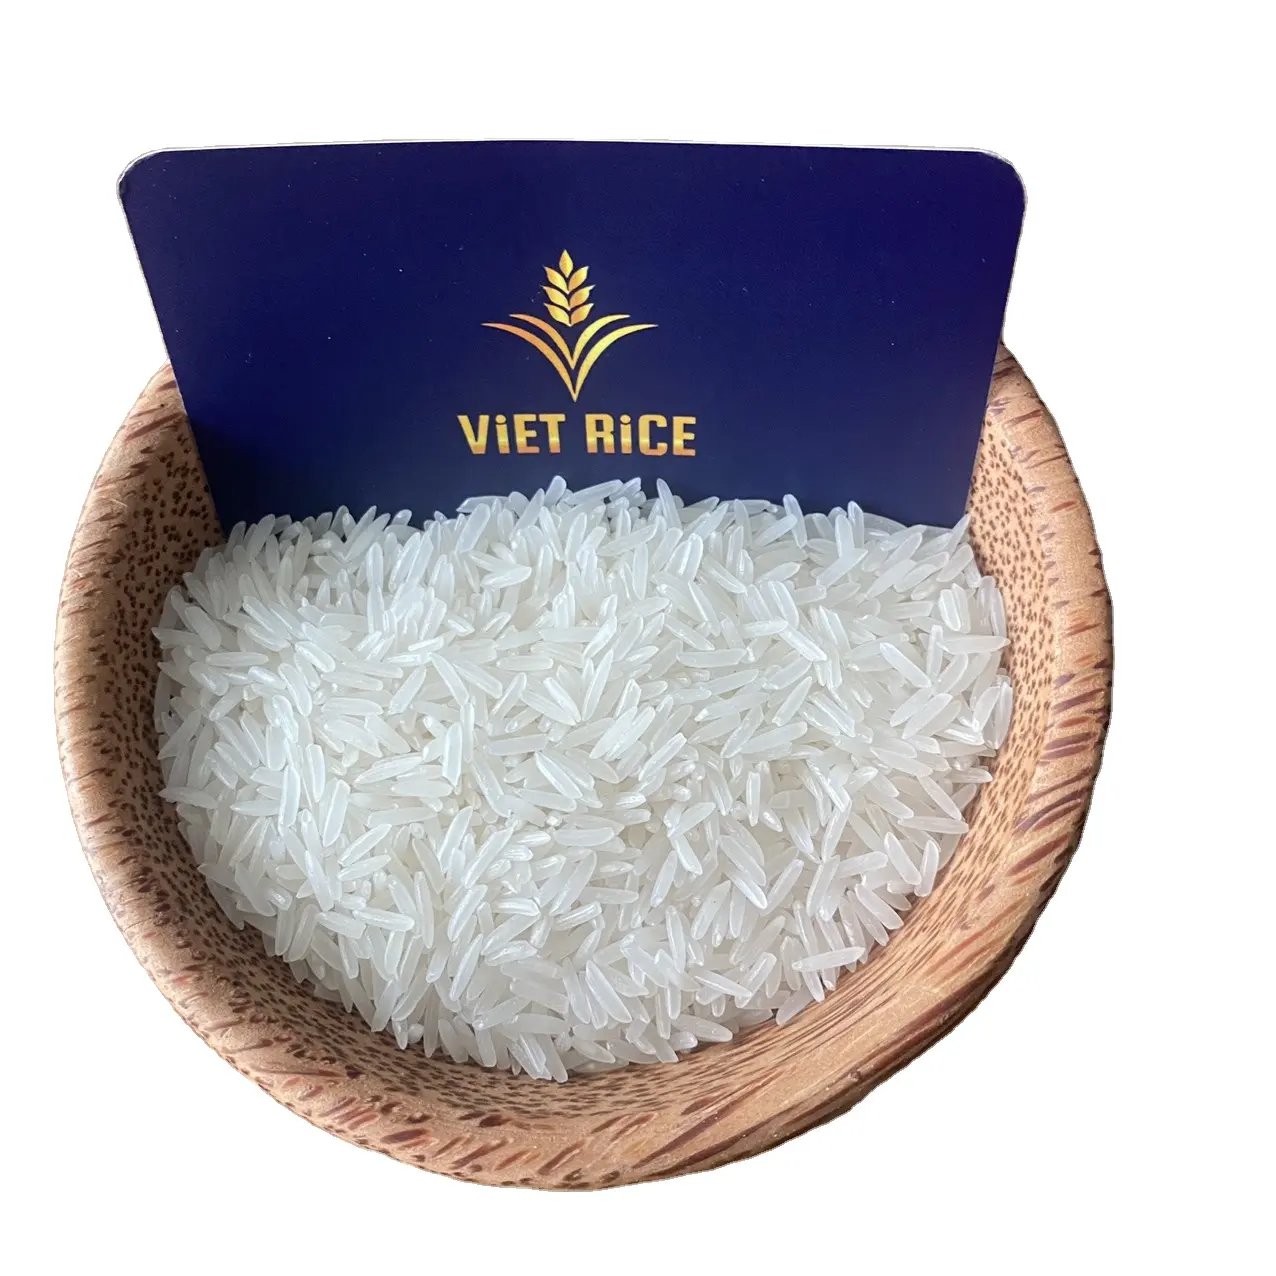 Vietrice-st25 5% gạo trắng cao cấp một trong những loại gạo tốt nhất xin vui lòng đặt hàng nhanh chóng để có được cung cấp giá liên hệ +(84) 962605191